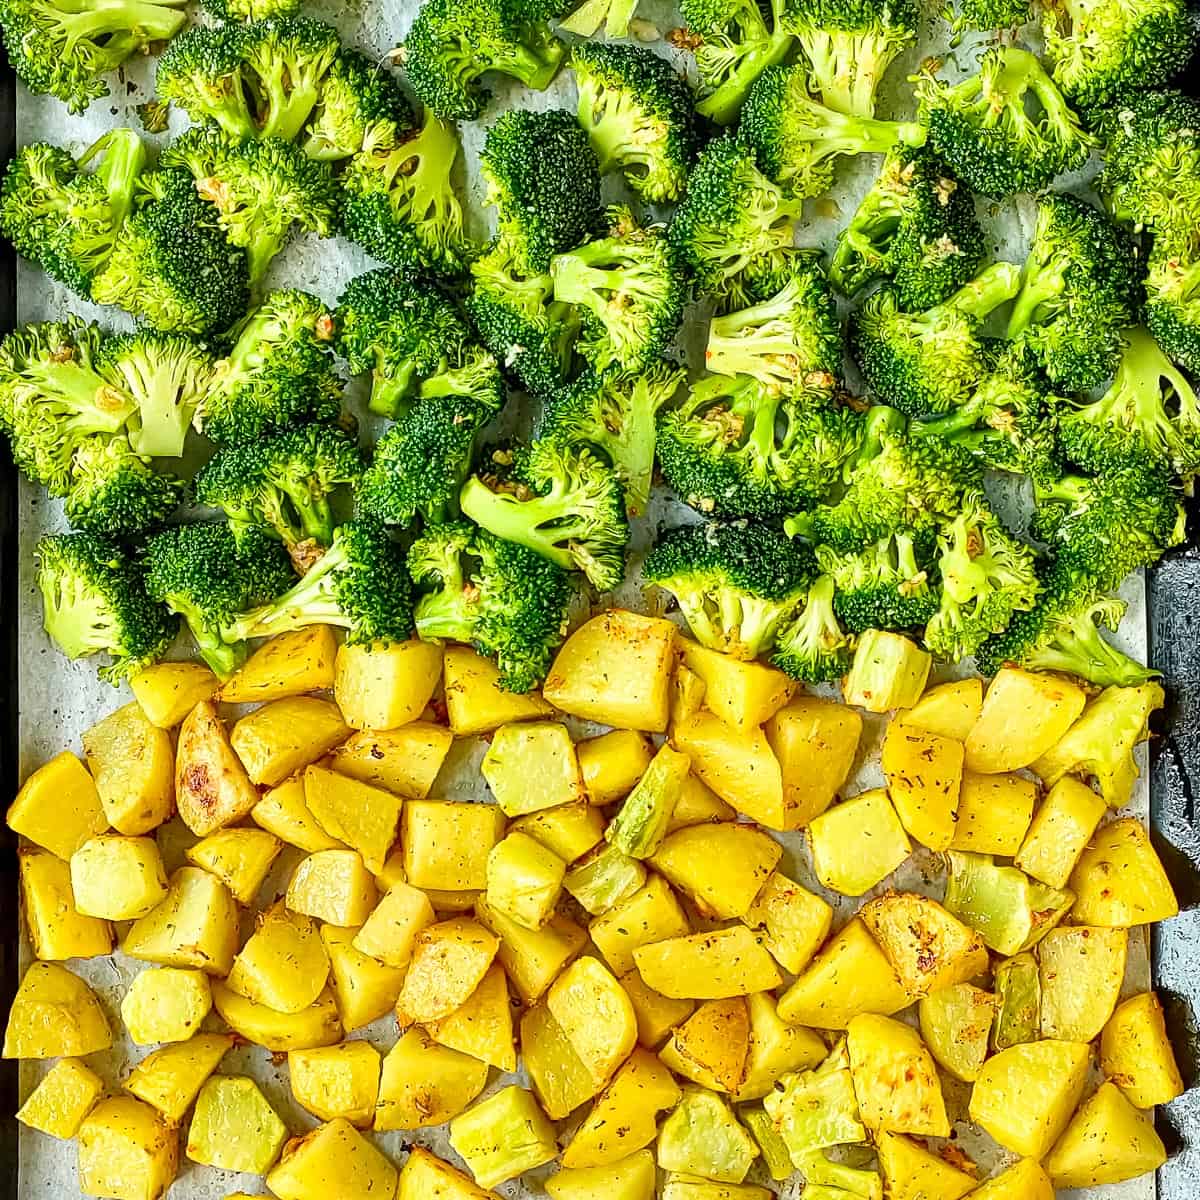 Roasting potatoes and broccoli on a sheet pan.